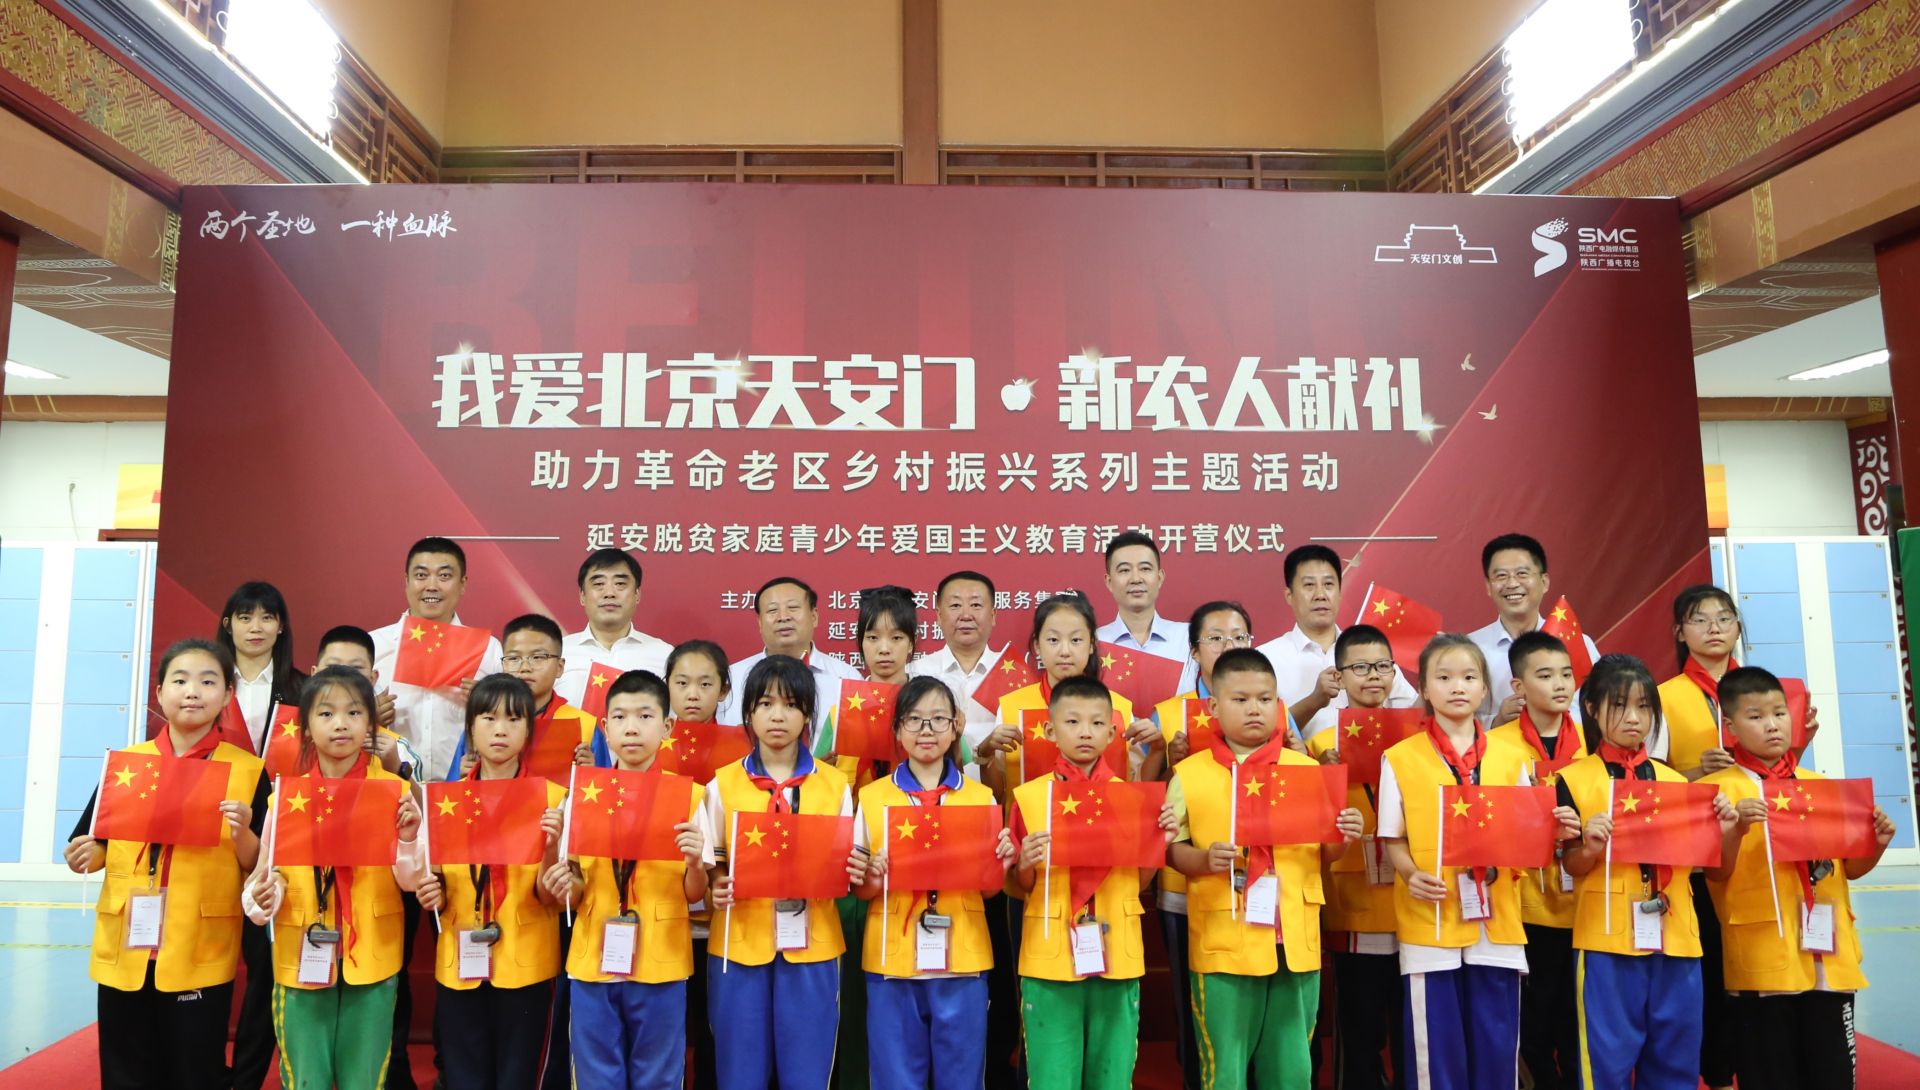 三农中心组织开展延安脱贫家庭青少年北京天安门爱国主义教育活动